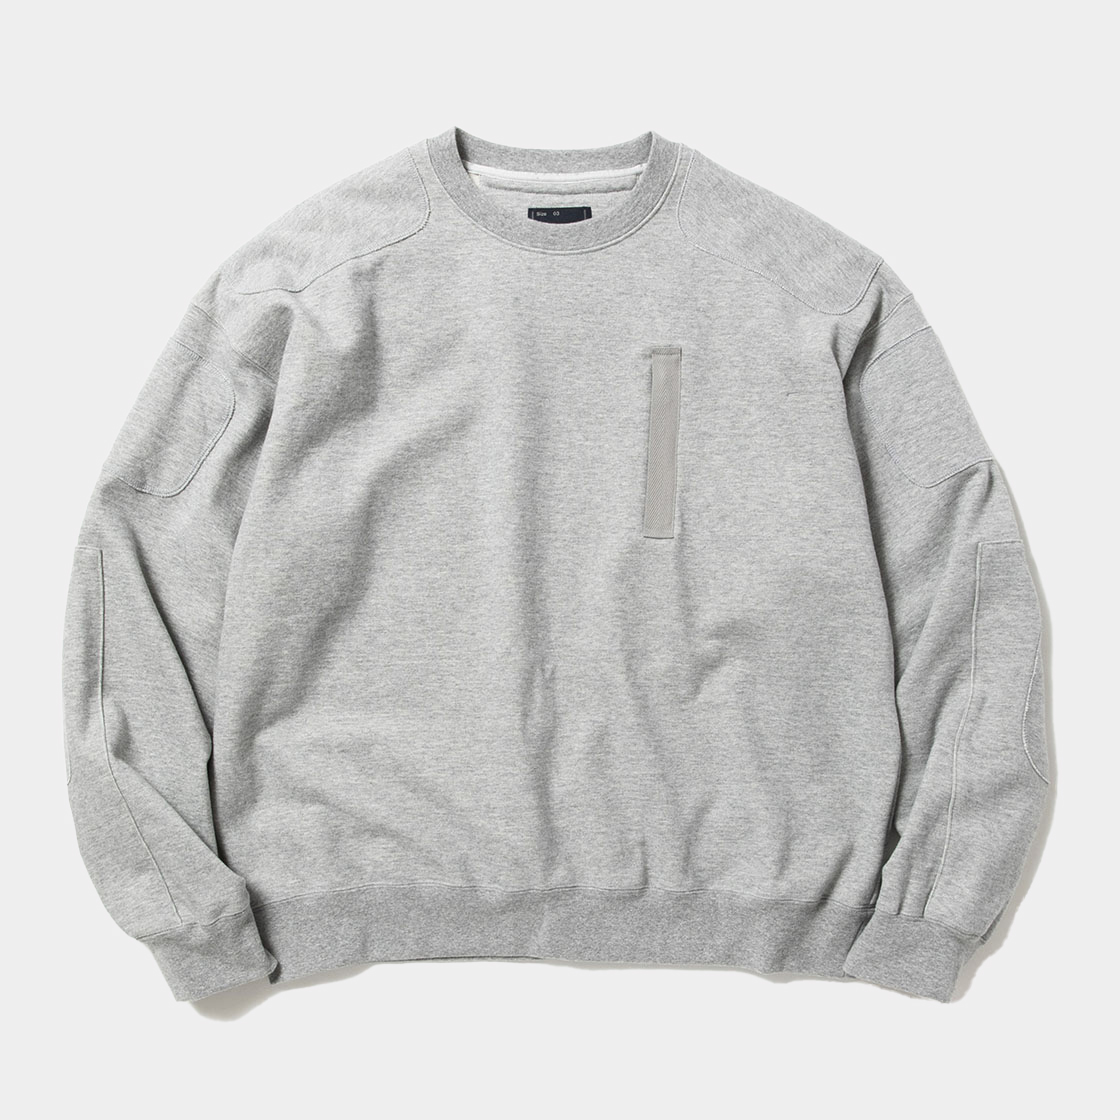 Pad Sweatshirt / Grey